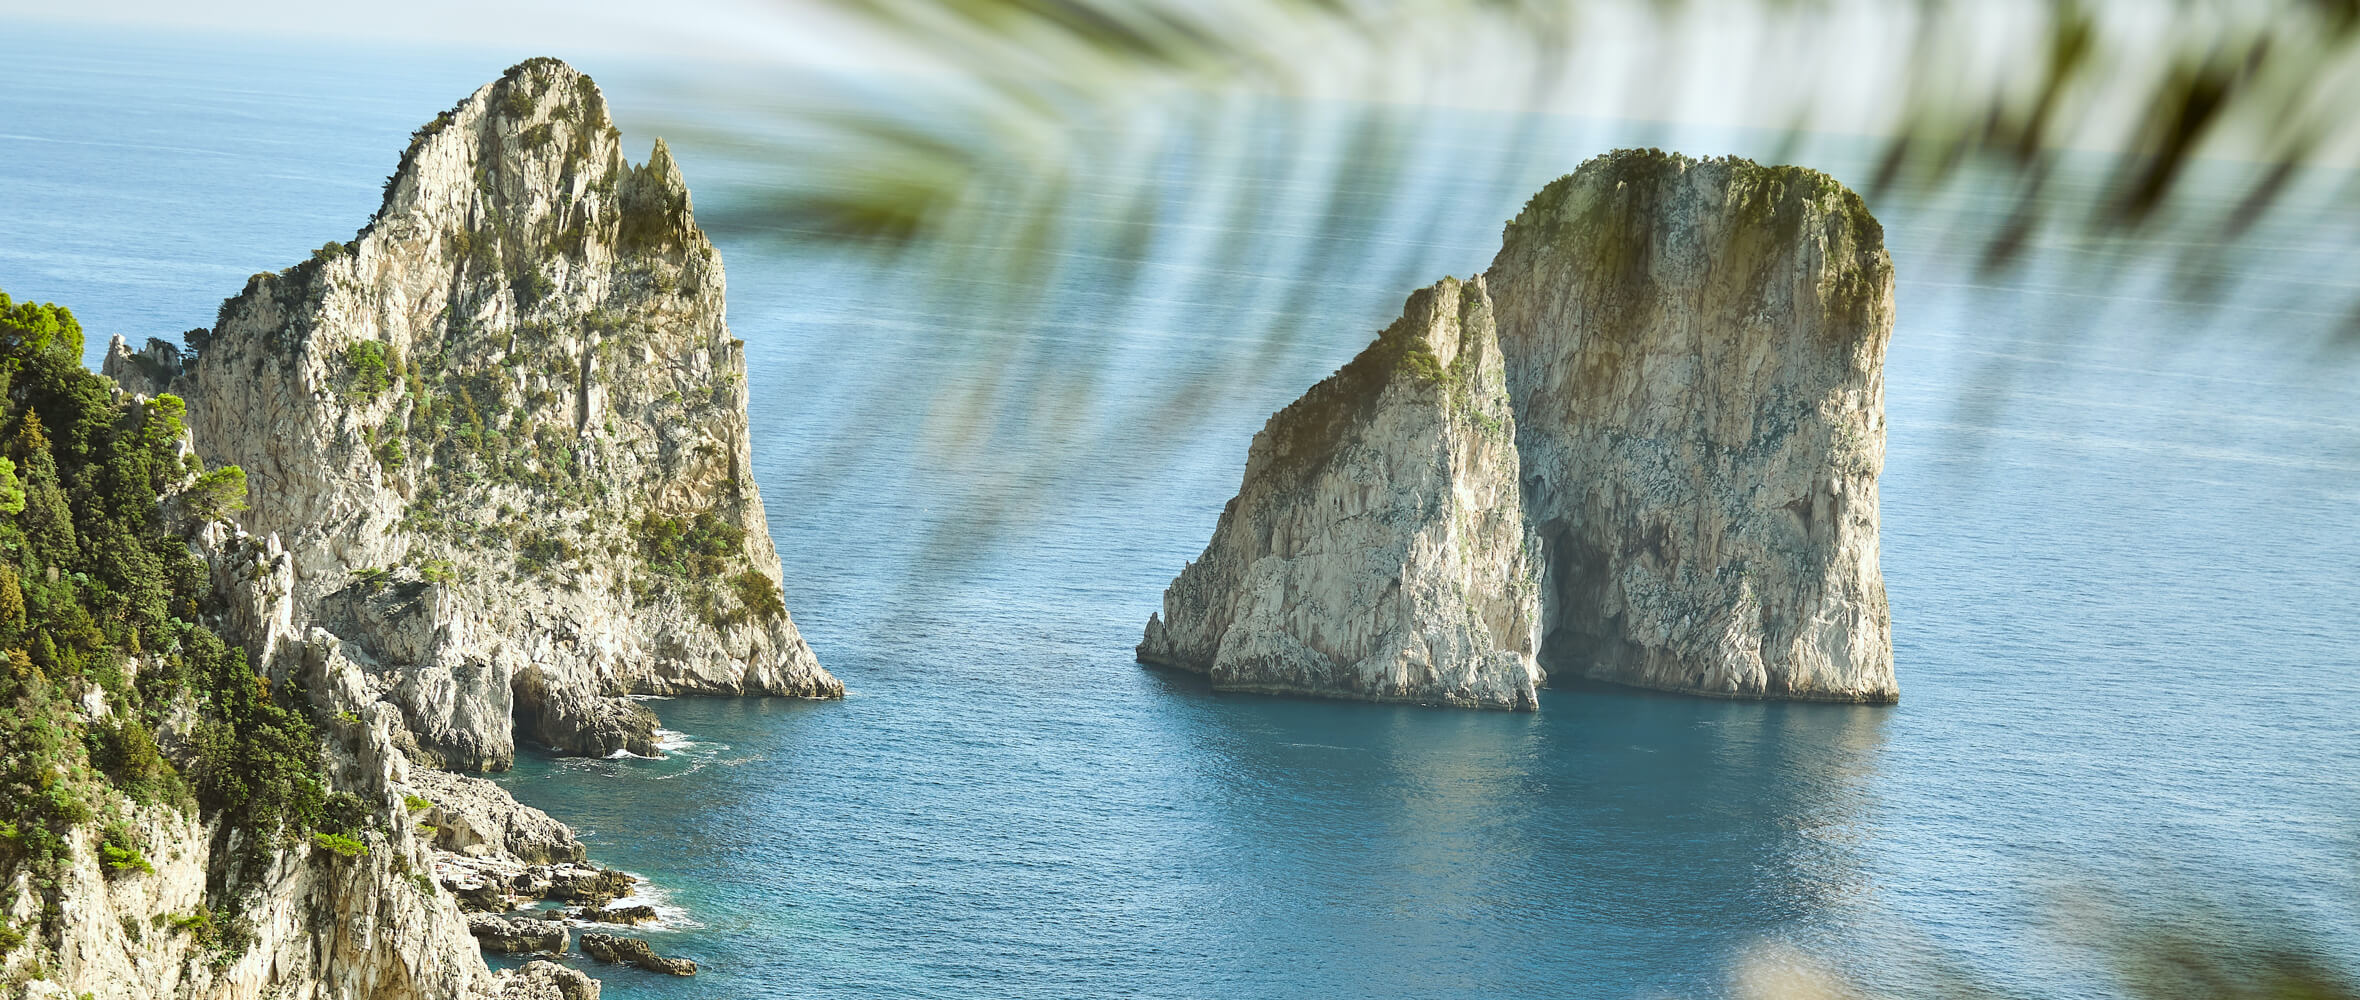 Limoncello di Capri faraglioni sul mare